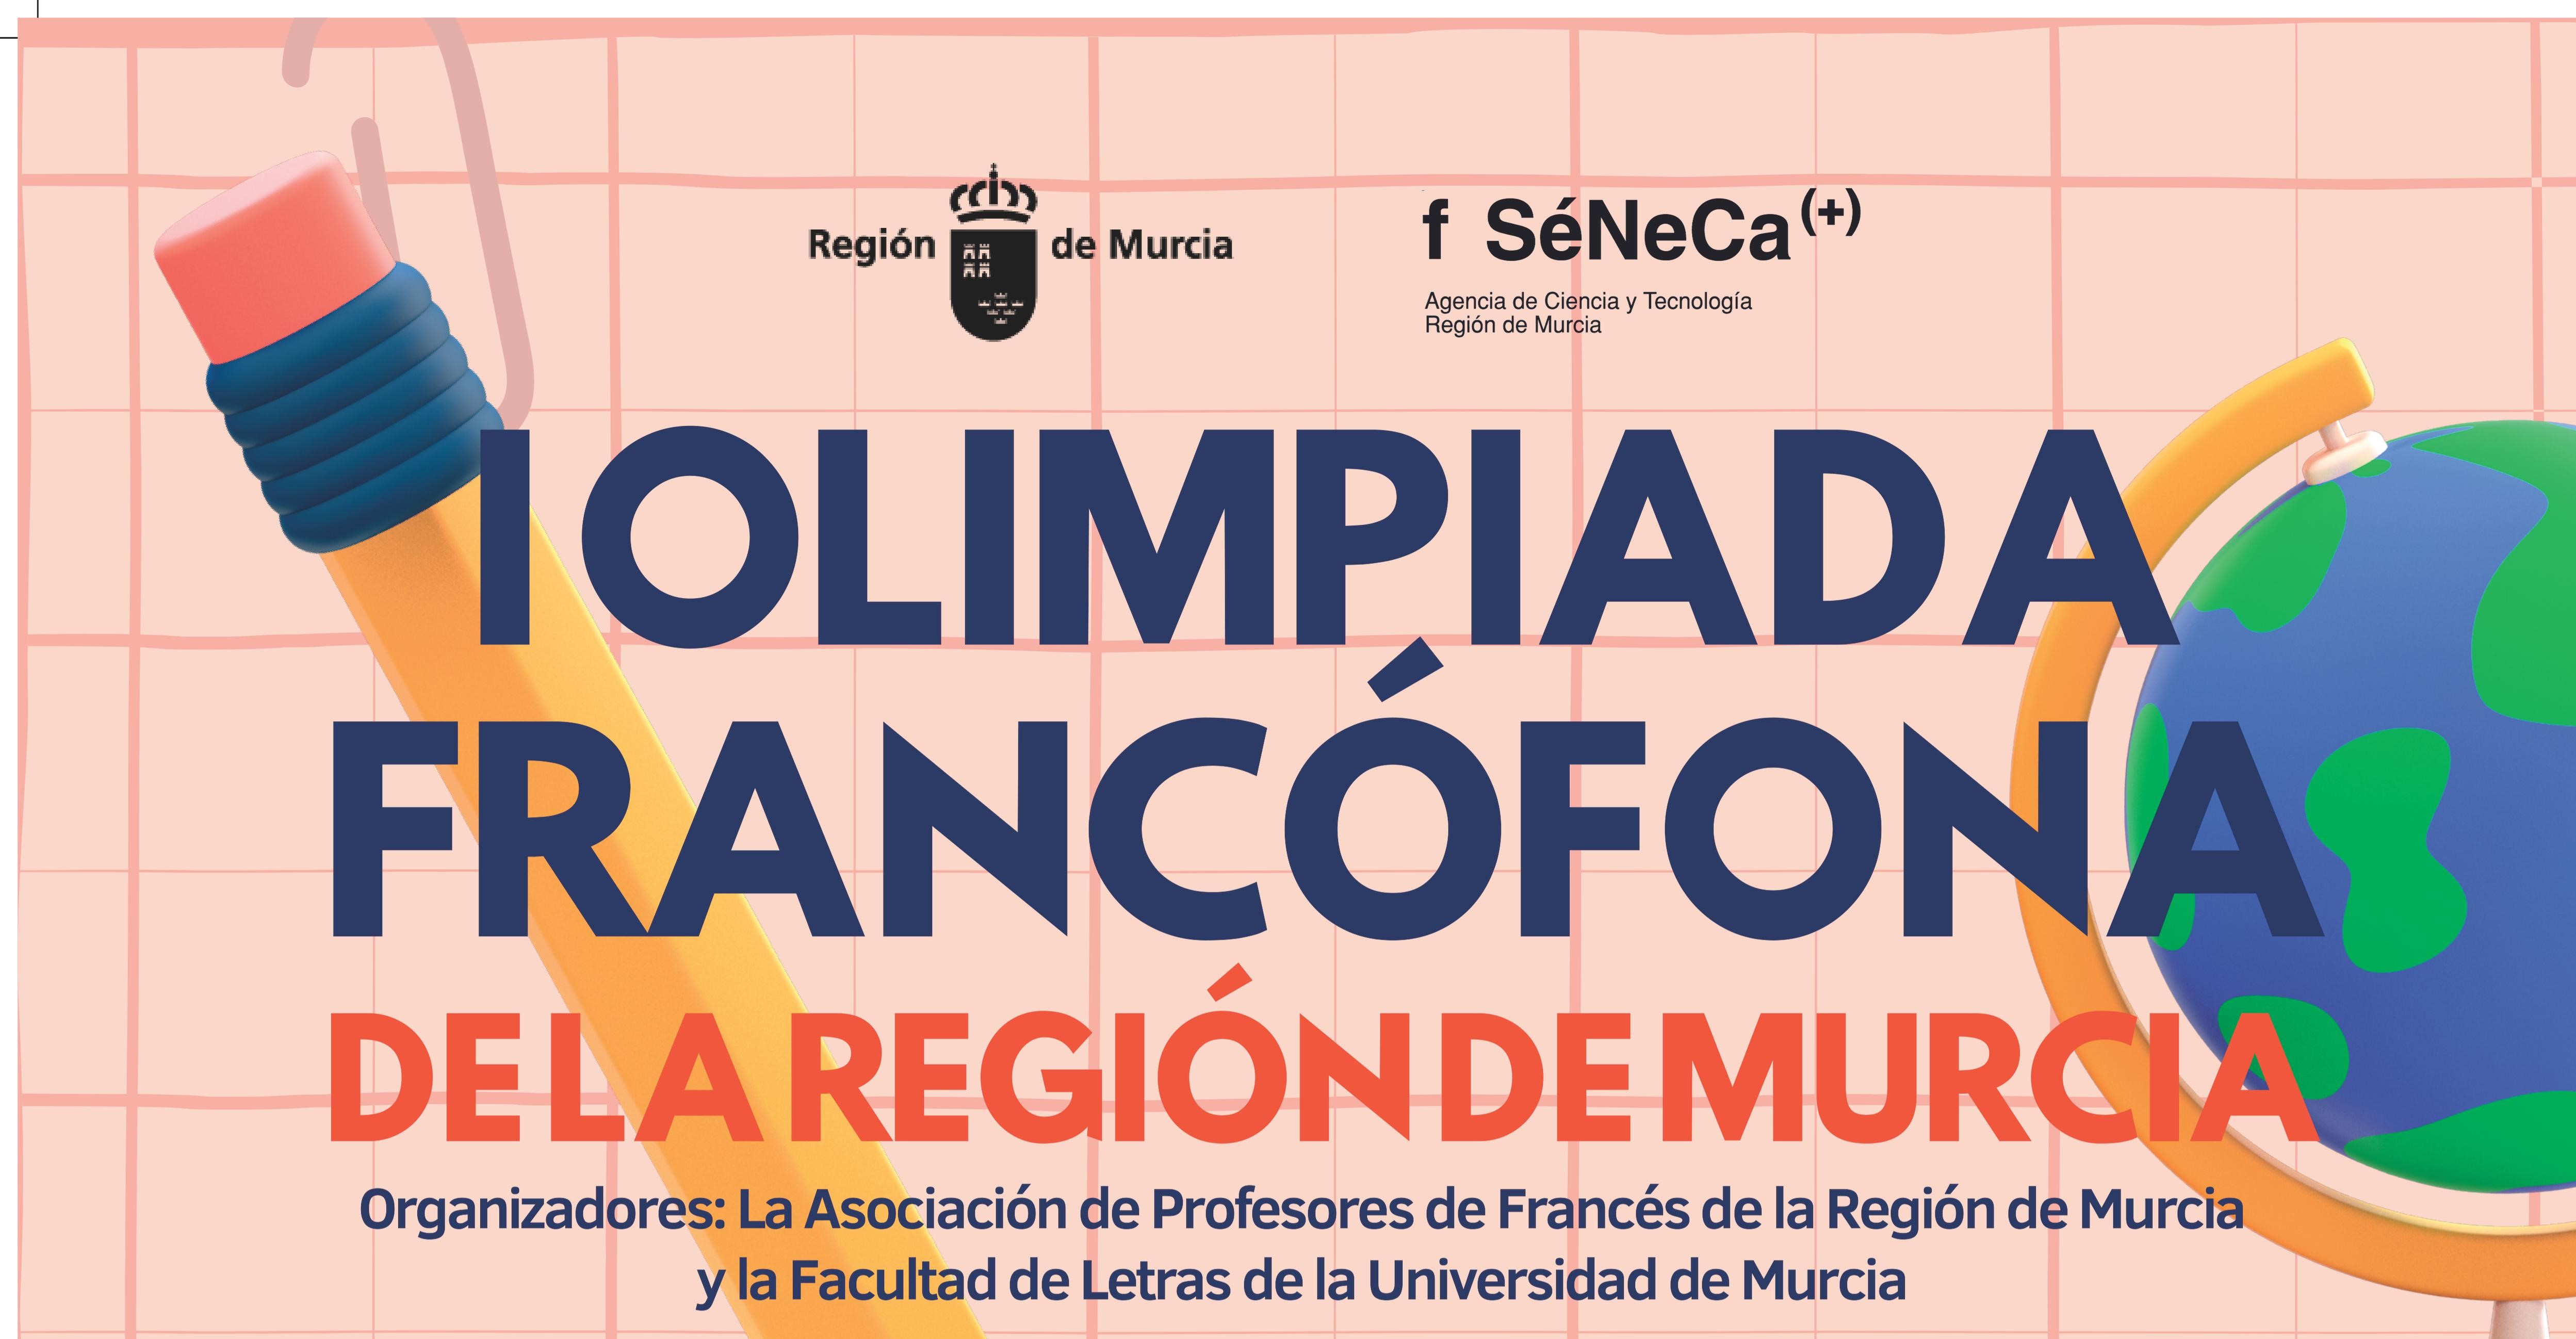 Imagen asociada al enlace con título I Olimpiada Francófona de la Región de Murcia